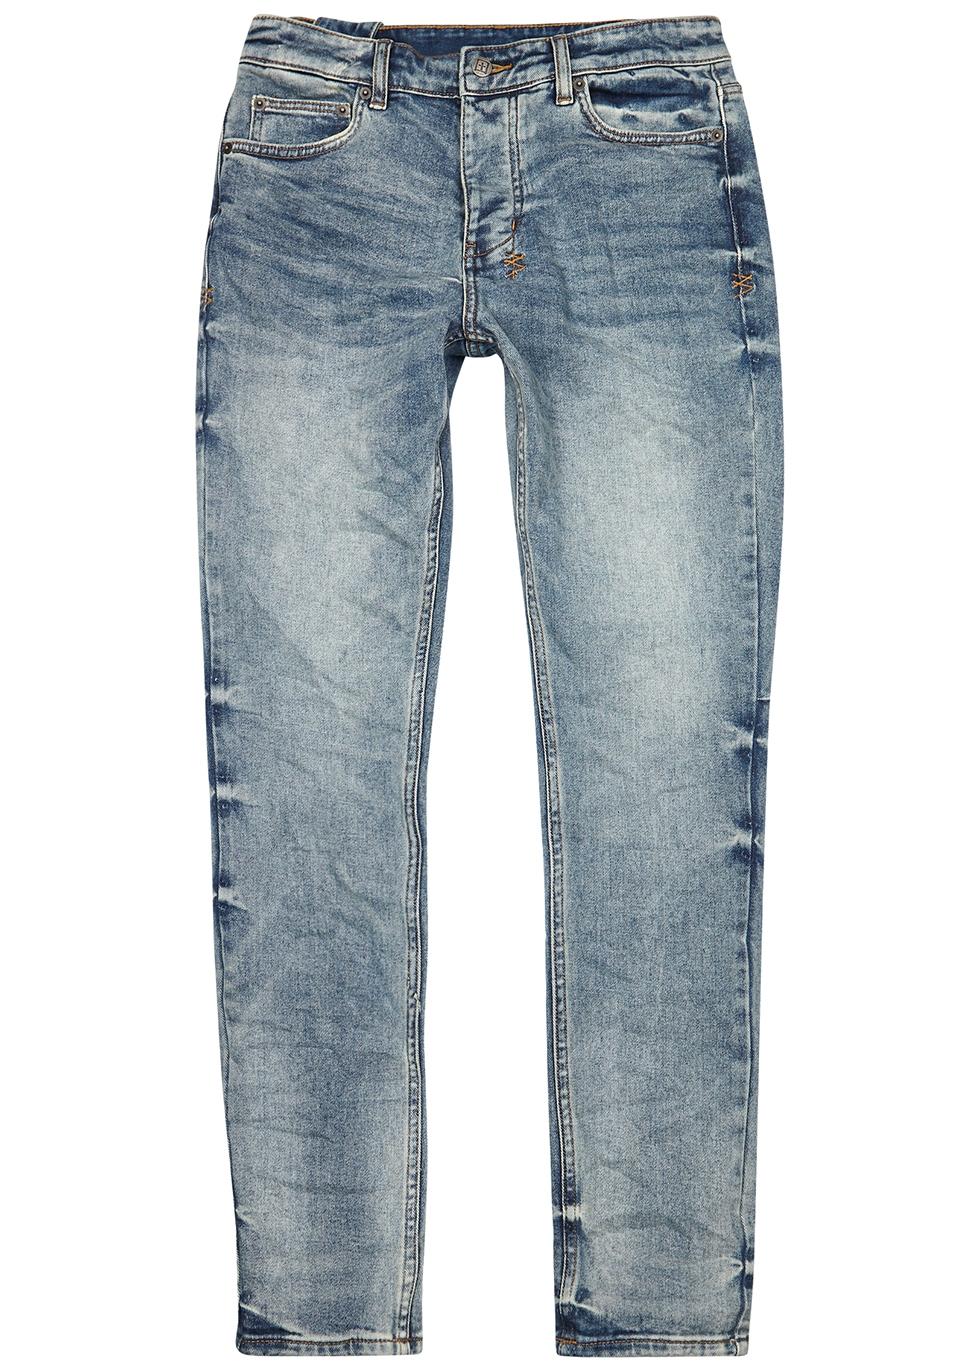 Ksubi Denim Chitch Blue Slim-leg Jeans for Men - Lyst